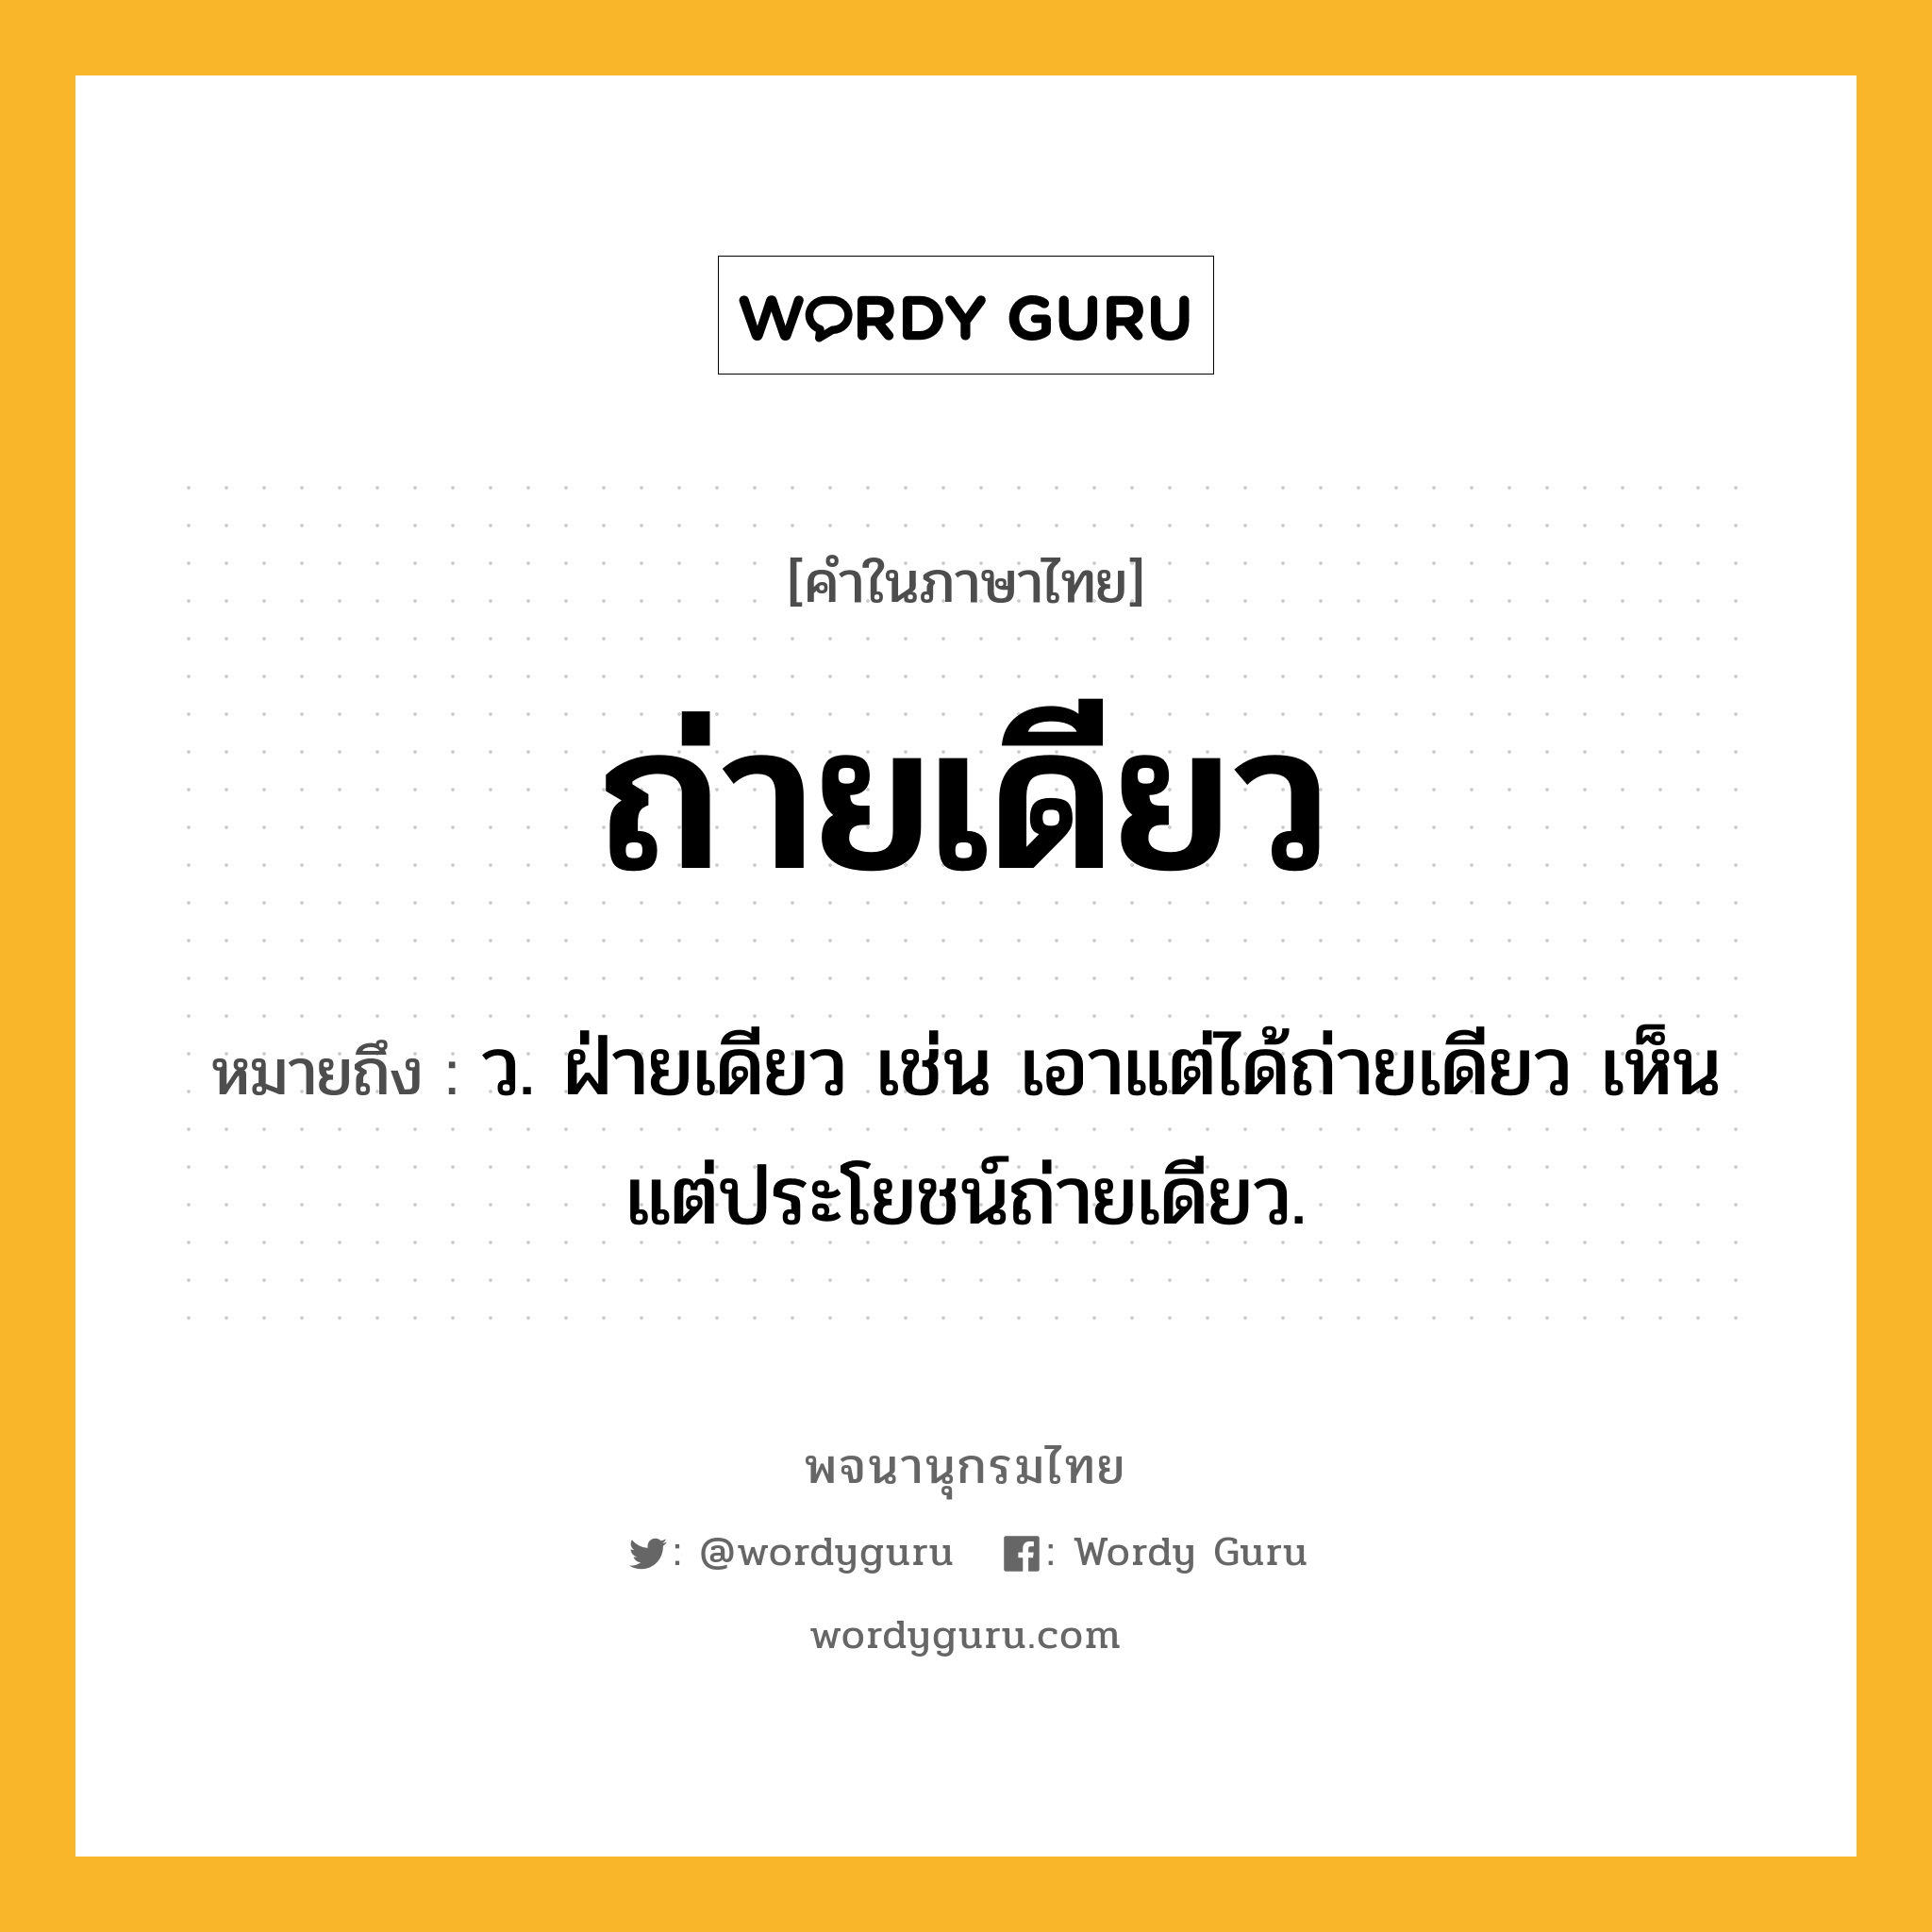 ถ่ายเดียว หมายถึงอะไร?, คำในภาษาไทย ถ่ายเดียว หมายถึง ว. ฝ่ายเดียว เช่น เอาแต่ได้ถ่ายเดียว เห็นแต่ประโยชน์ถ่ายเดียว.